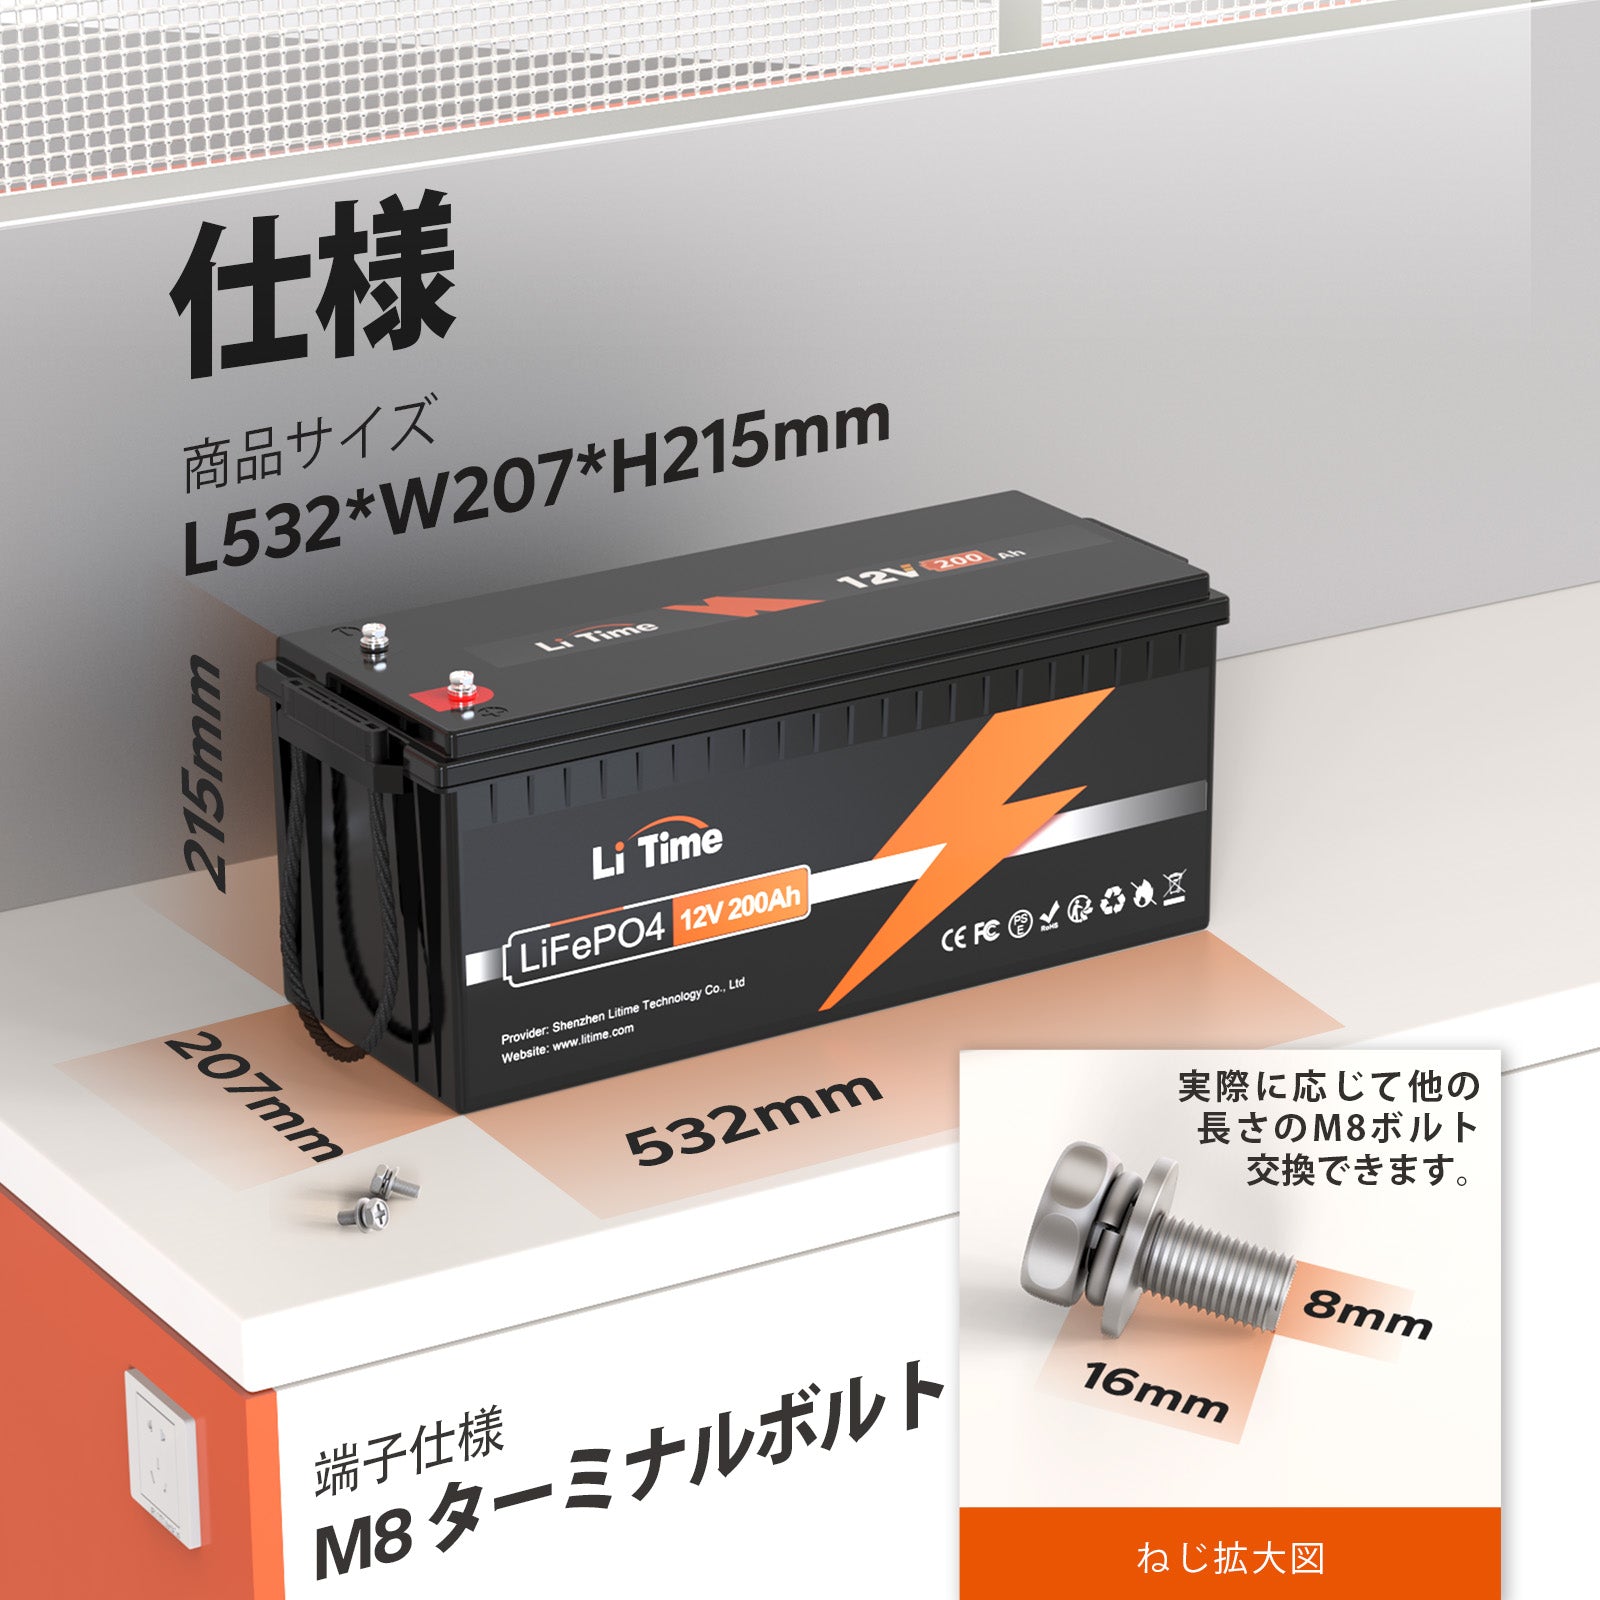 リチウム電池 リン酸鉄系 12v100A サブバッテリー価格を変更されましたか